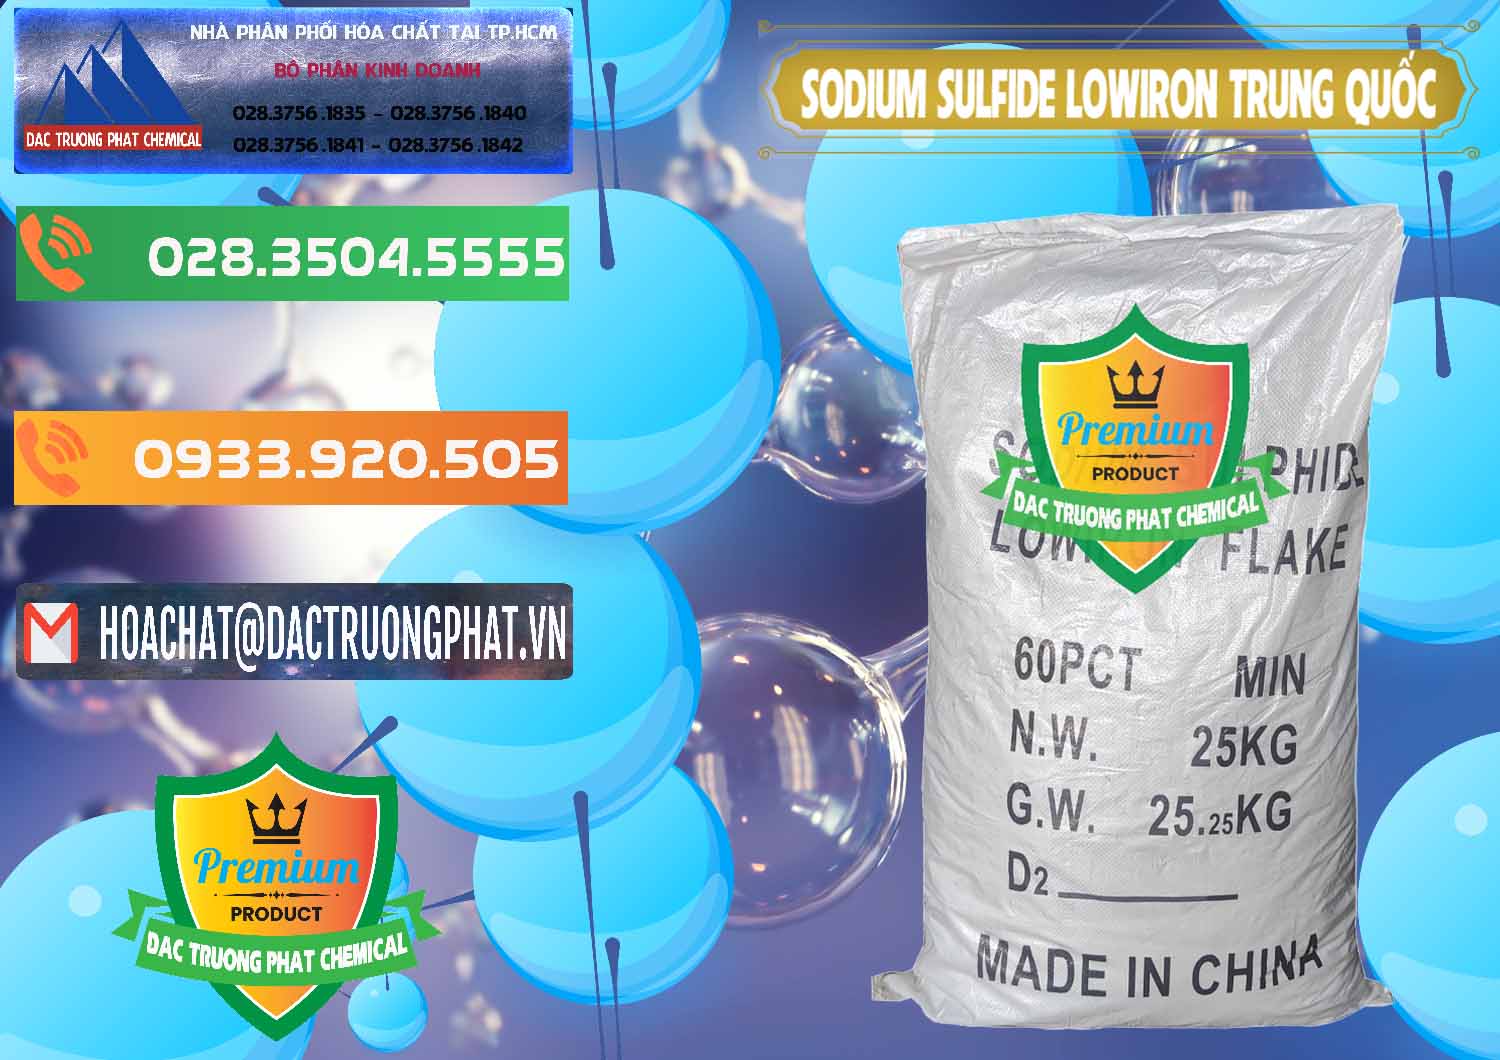 Cty chuyên cung cấp & bán Sodium Sulfide NA2S – Đá Thối Lowiron Trung Quốc China - 0227 - Cty cung cấp và kinh doanh hóa chất tại TP.HCM - hoachatxulynuoc.com.vn